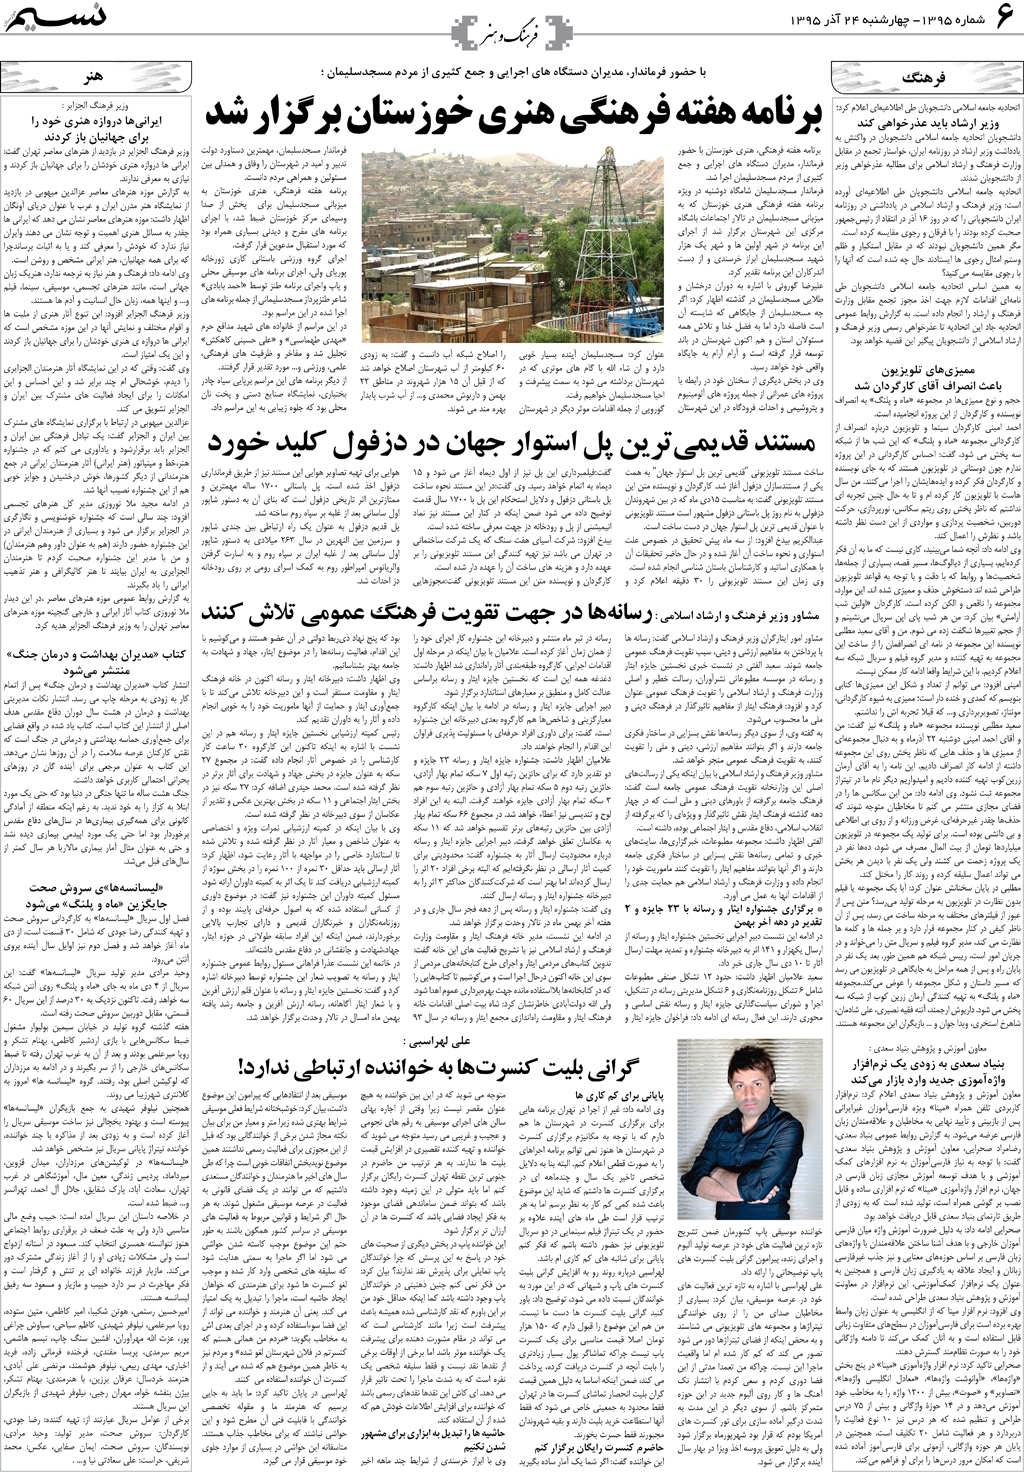 صفحه فرهنگ و هنر روزنامه نسیم شماره 1395